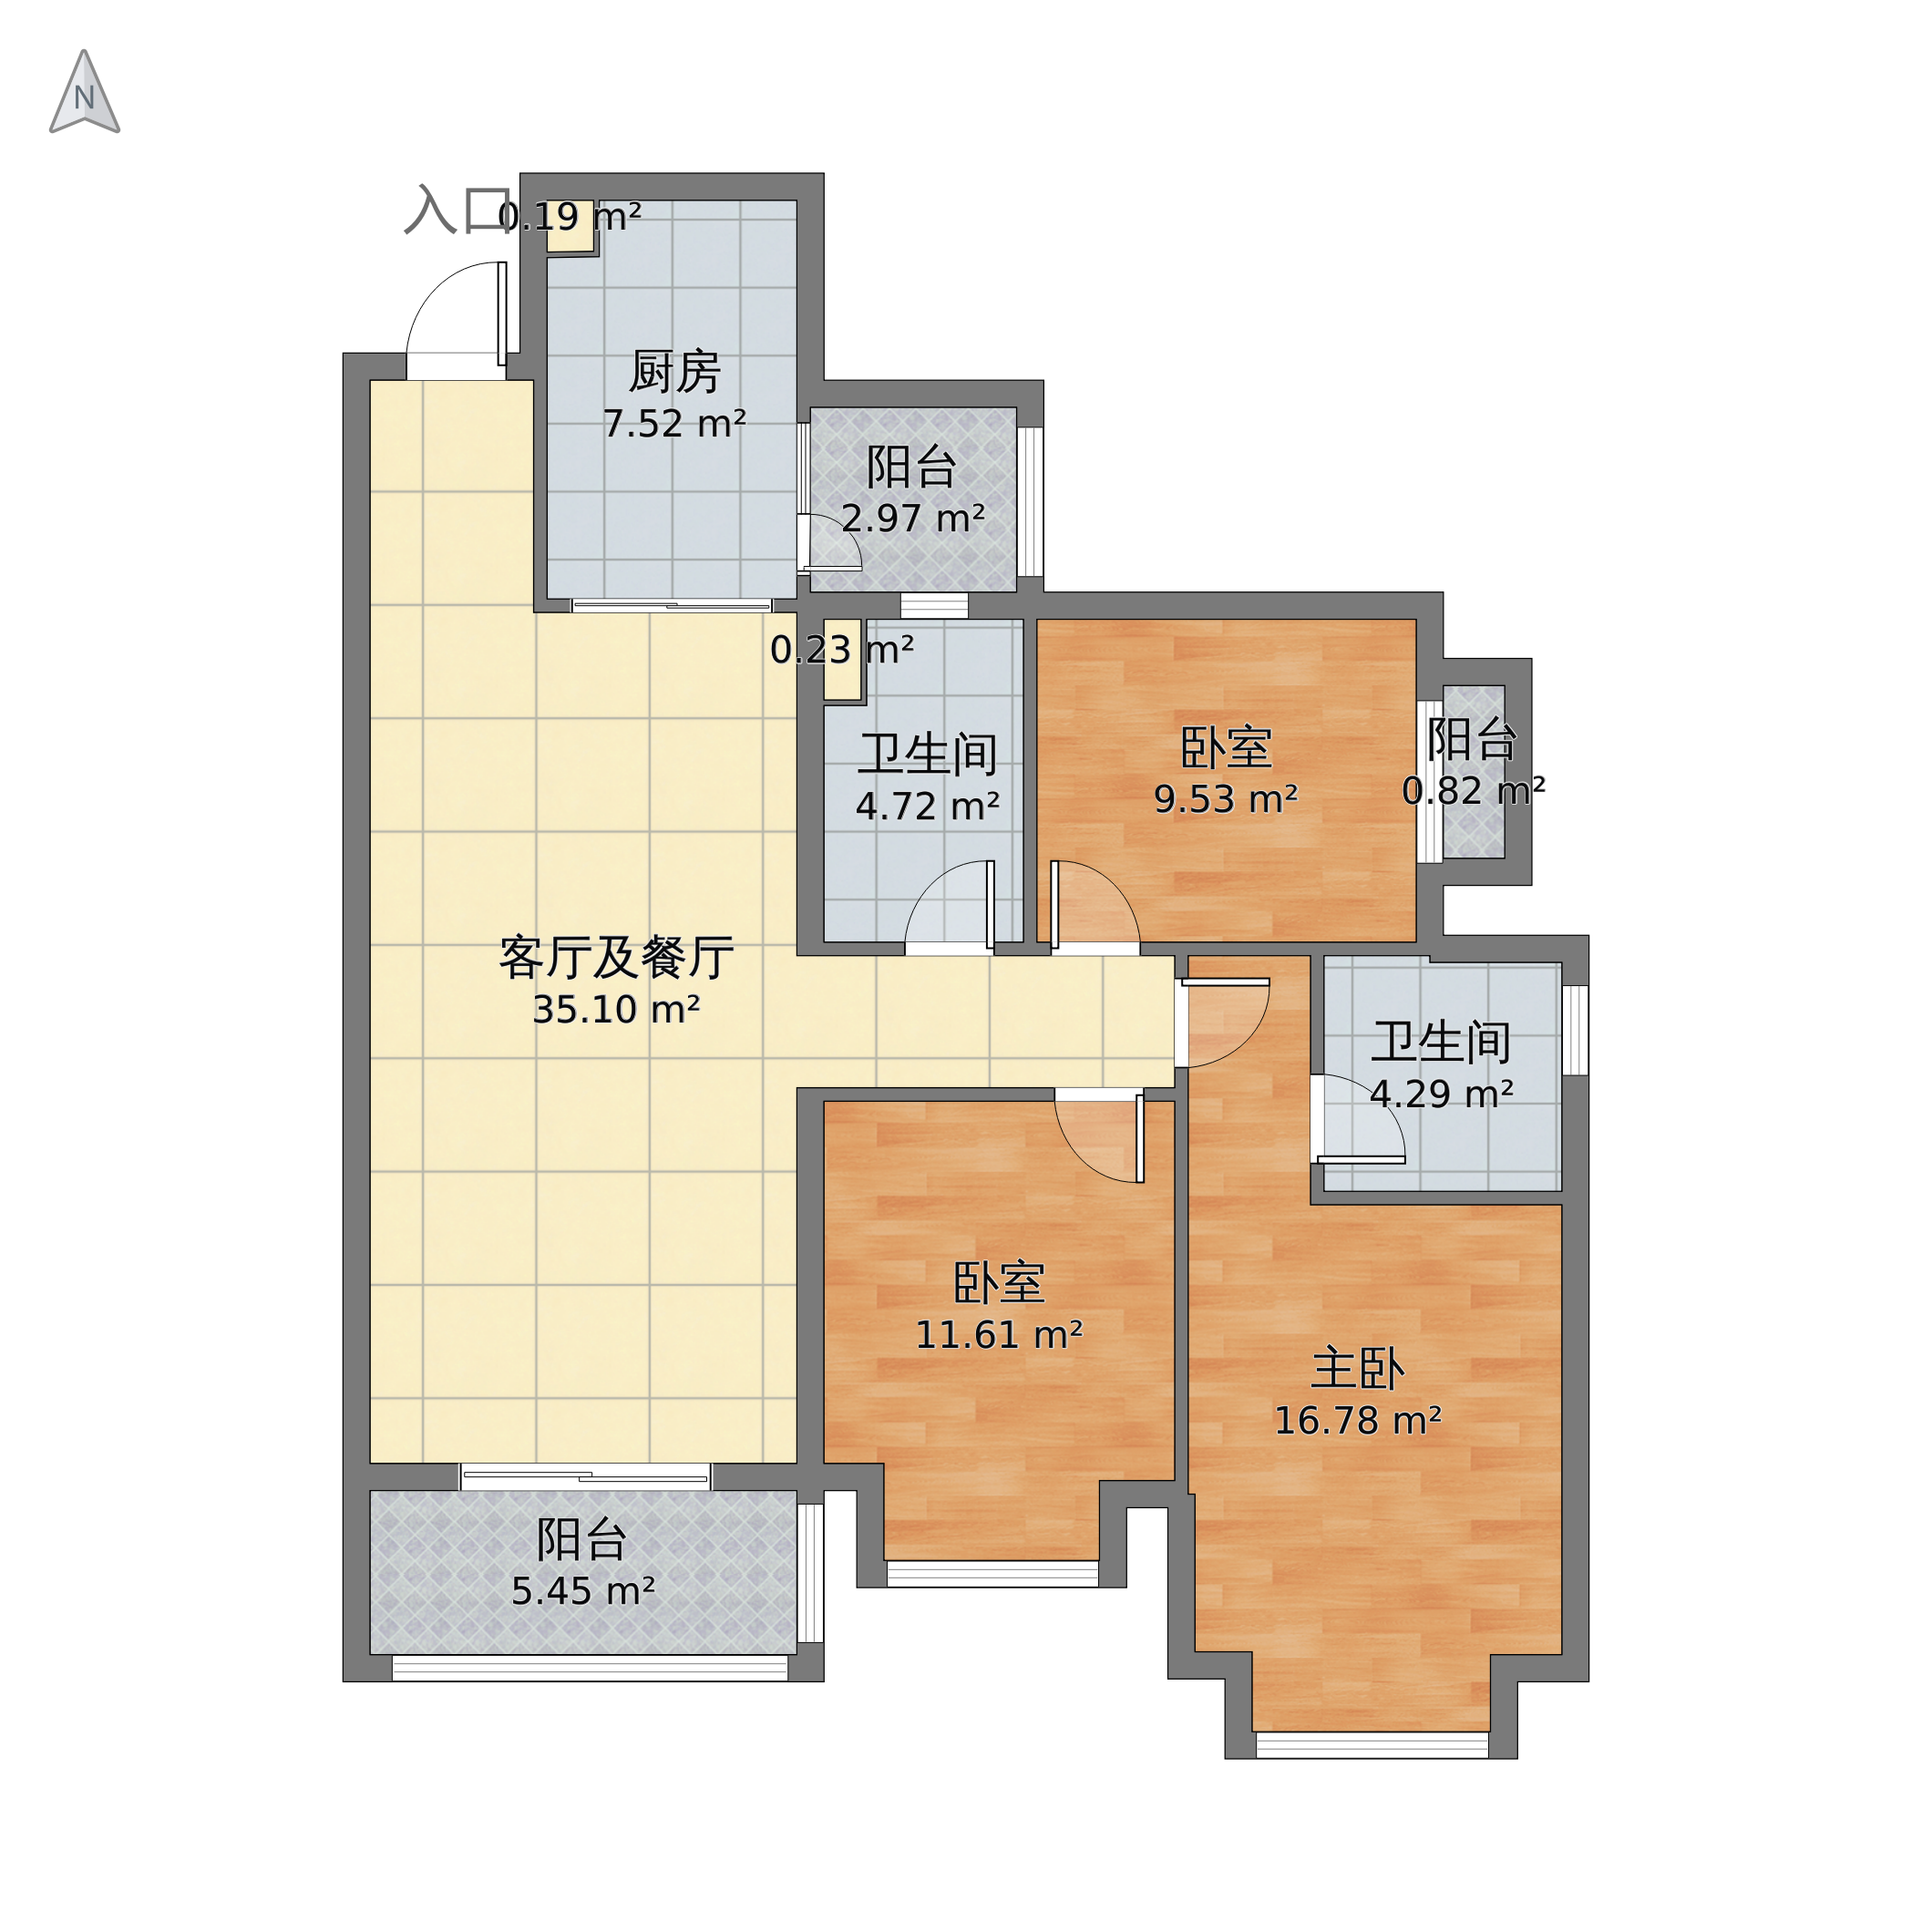 重庆市九龙坡区恒大香山华府三室两厅两卫110平方米